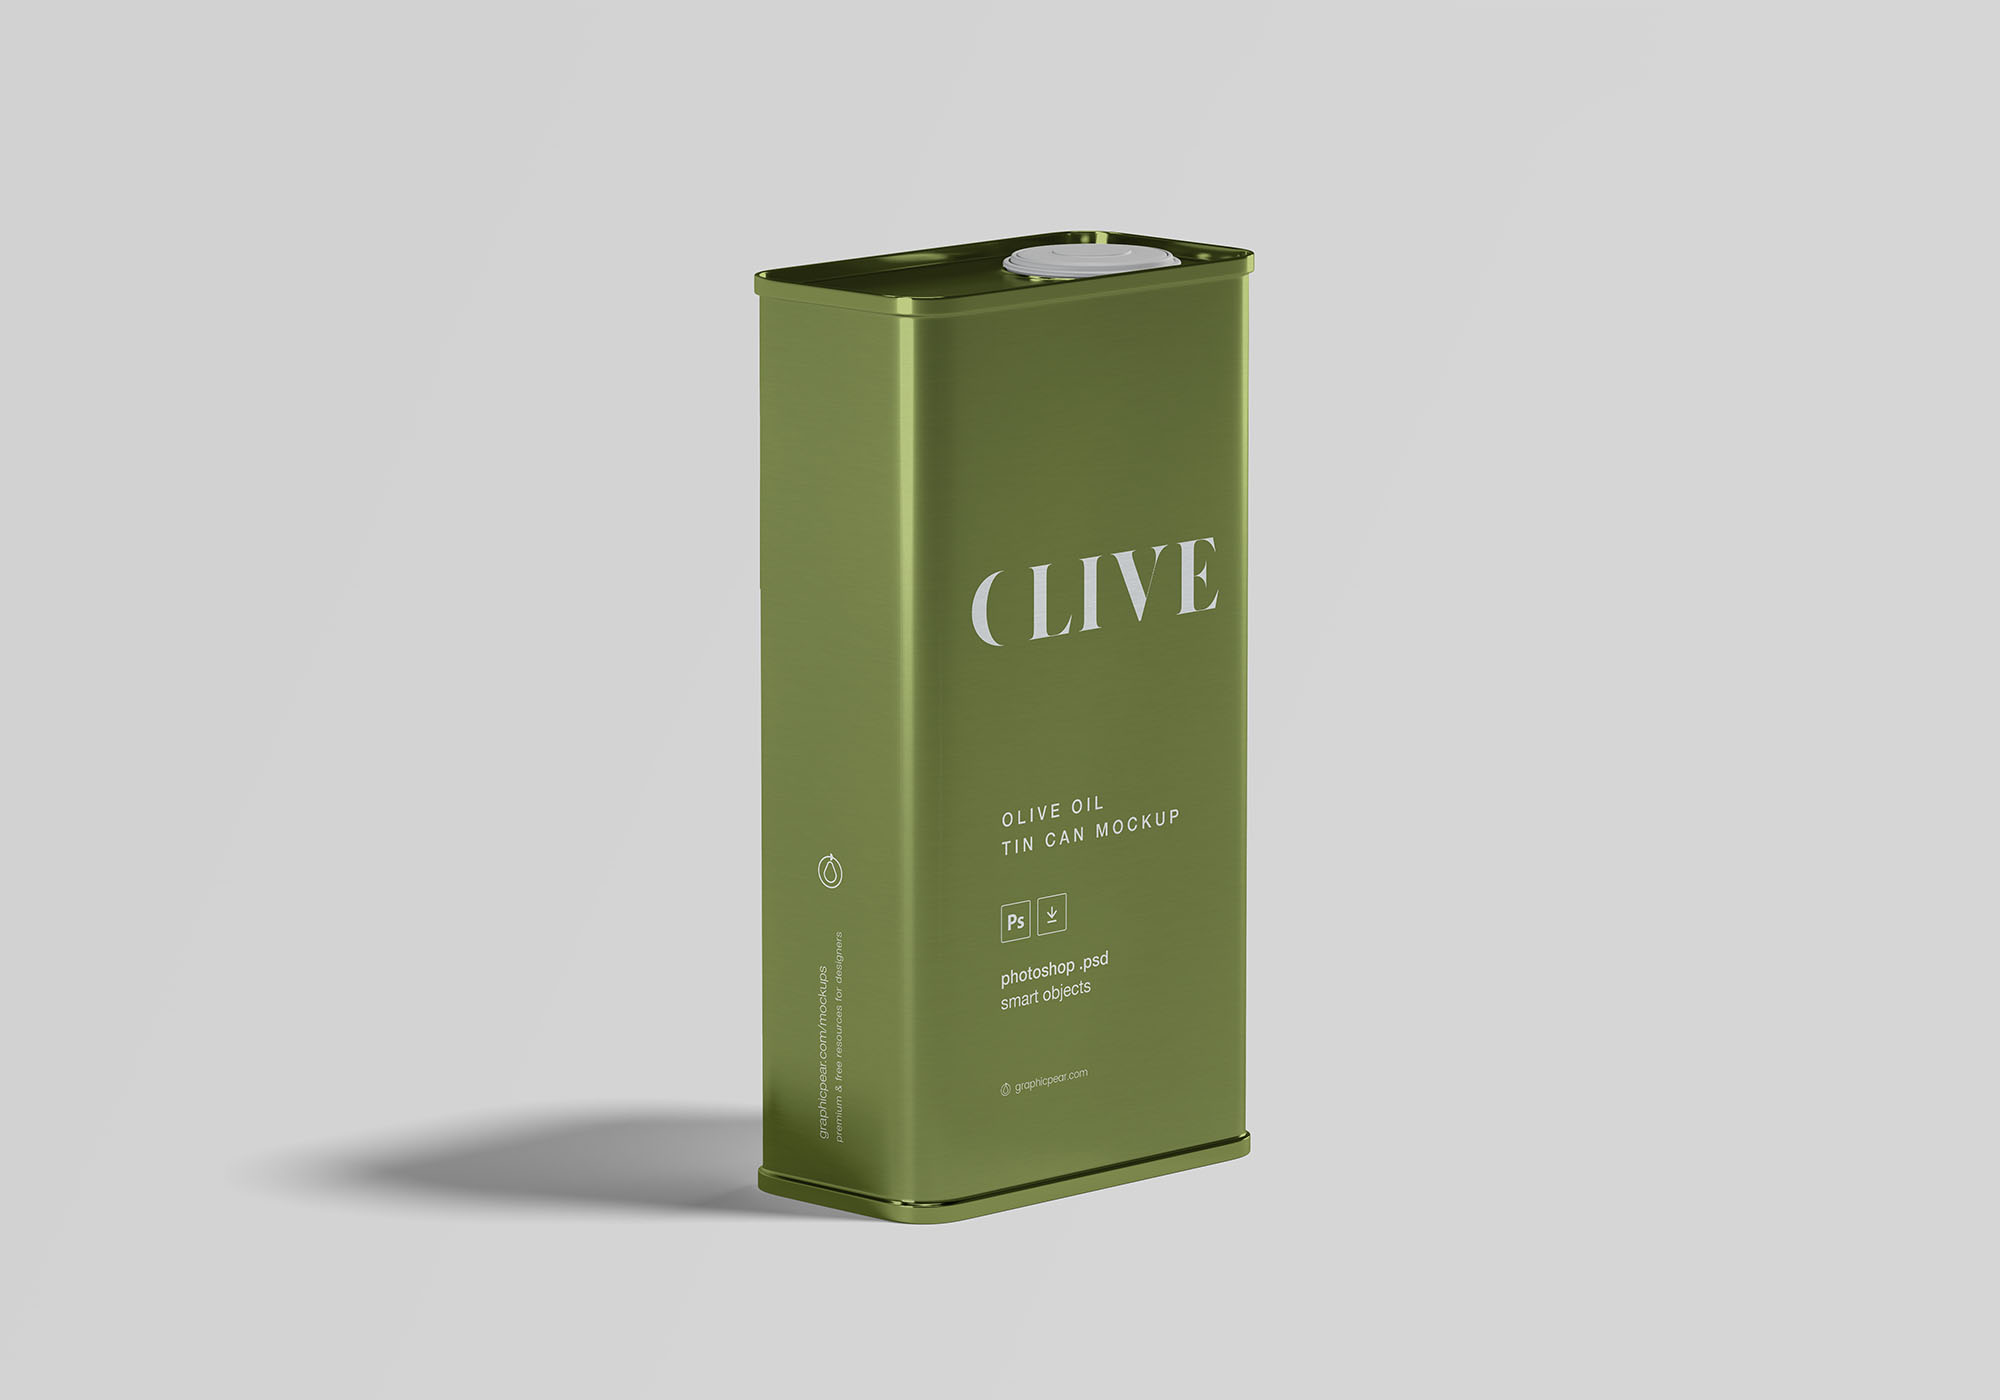 橄榄油罐头包装外观设计样机模板 Olive Oil Tin Can Mockup插图(1)